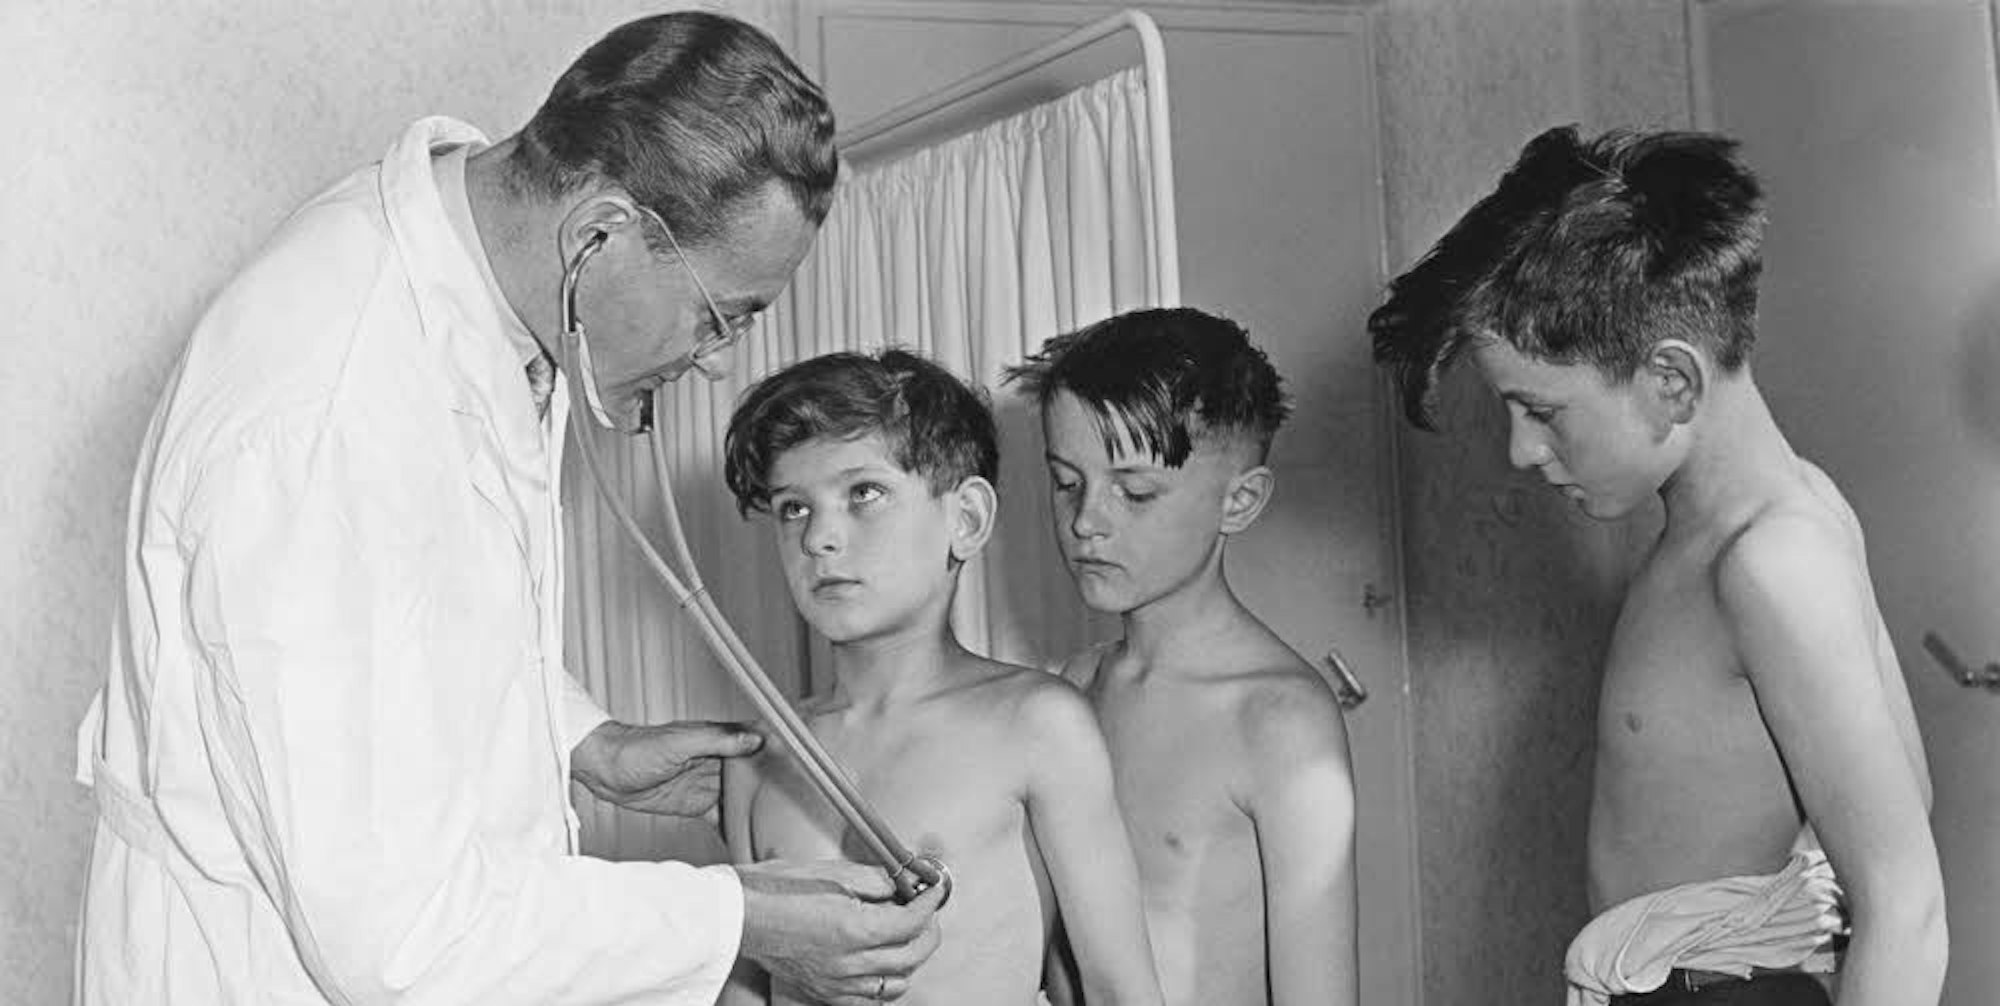 Bild aus den Zeiten (1955) der frühen Bundesrepublik: Arztbesuch in der Schule